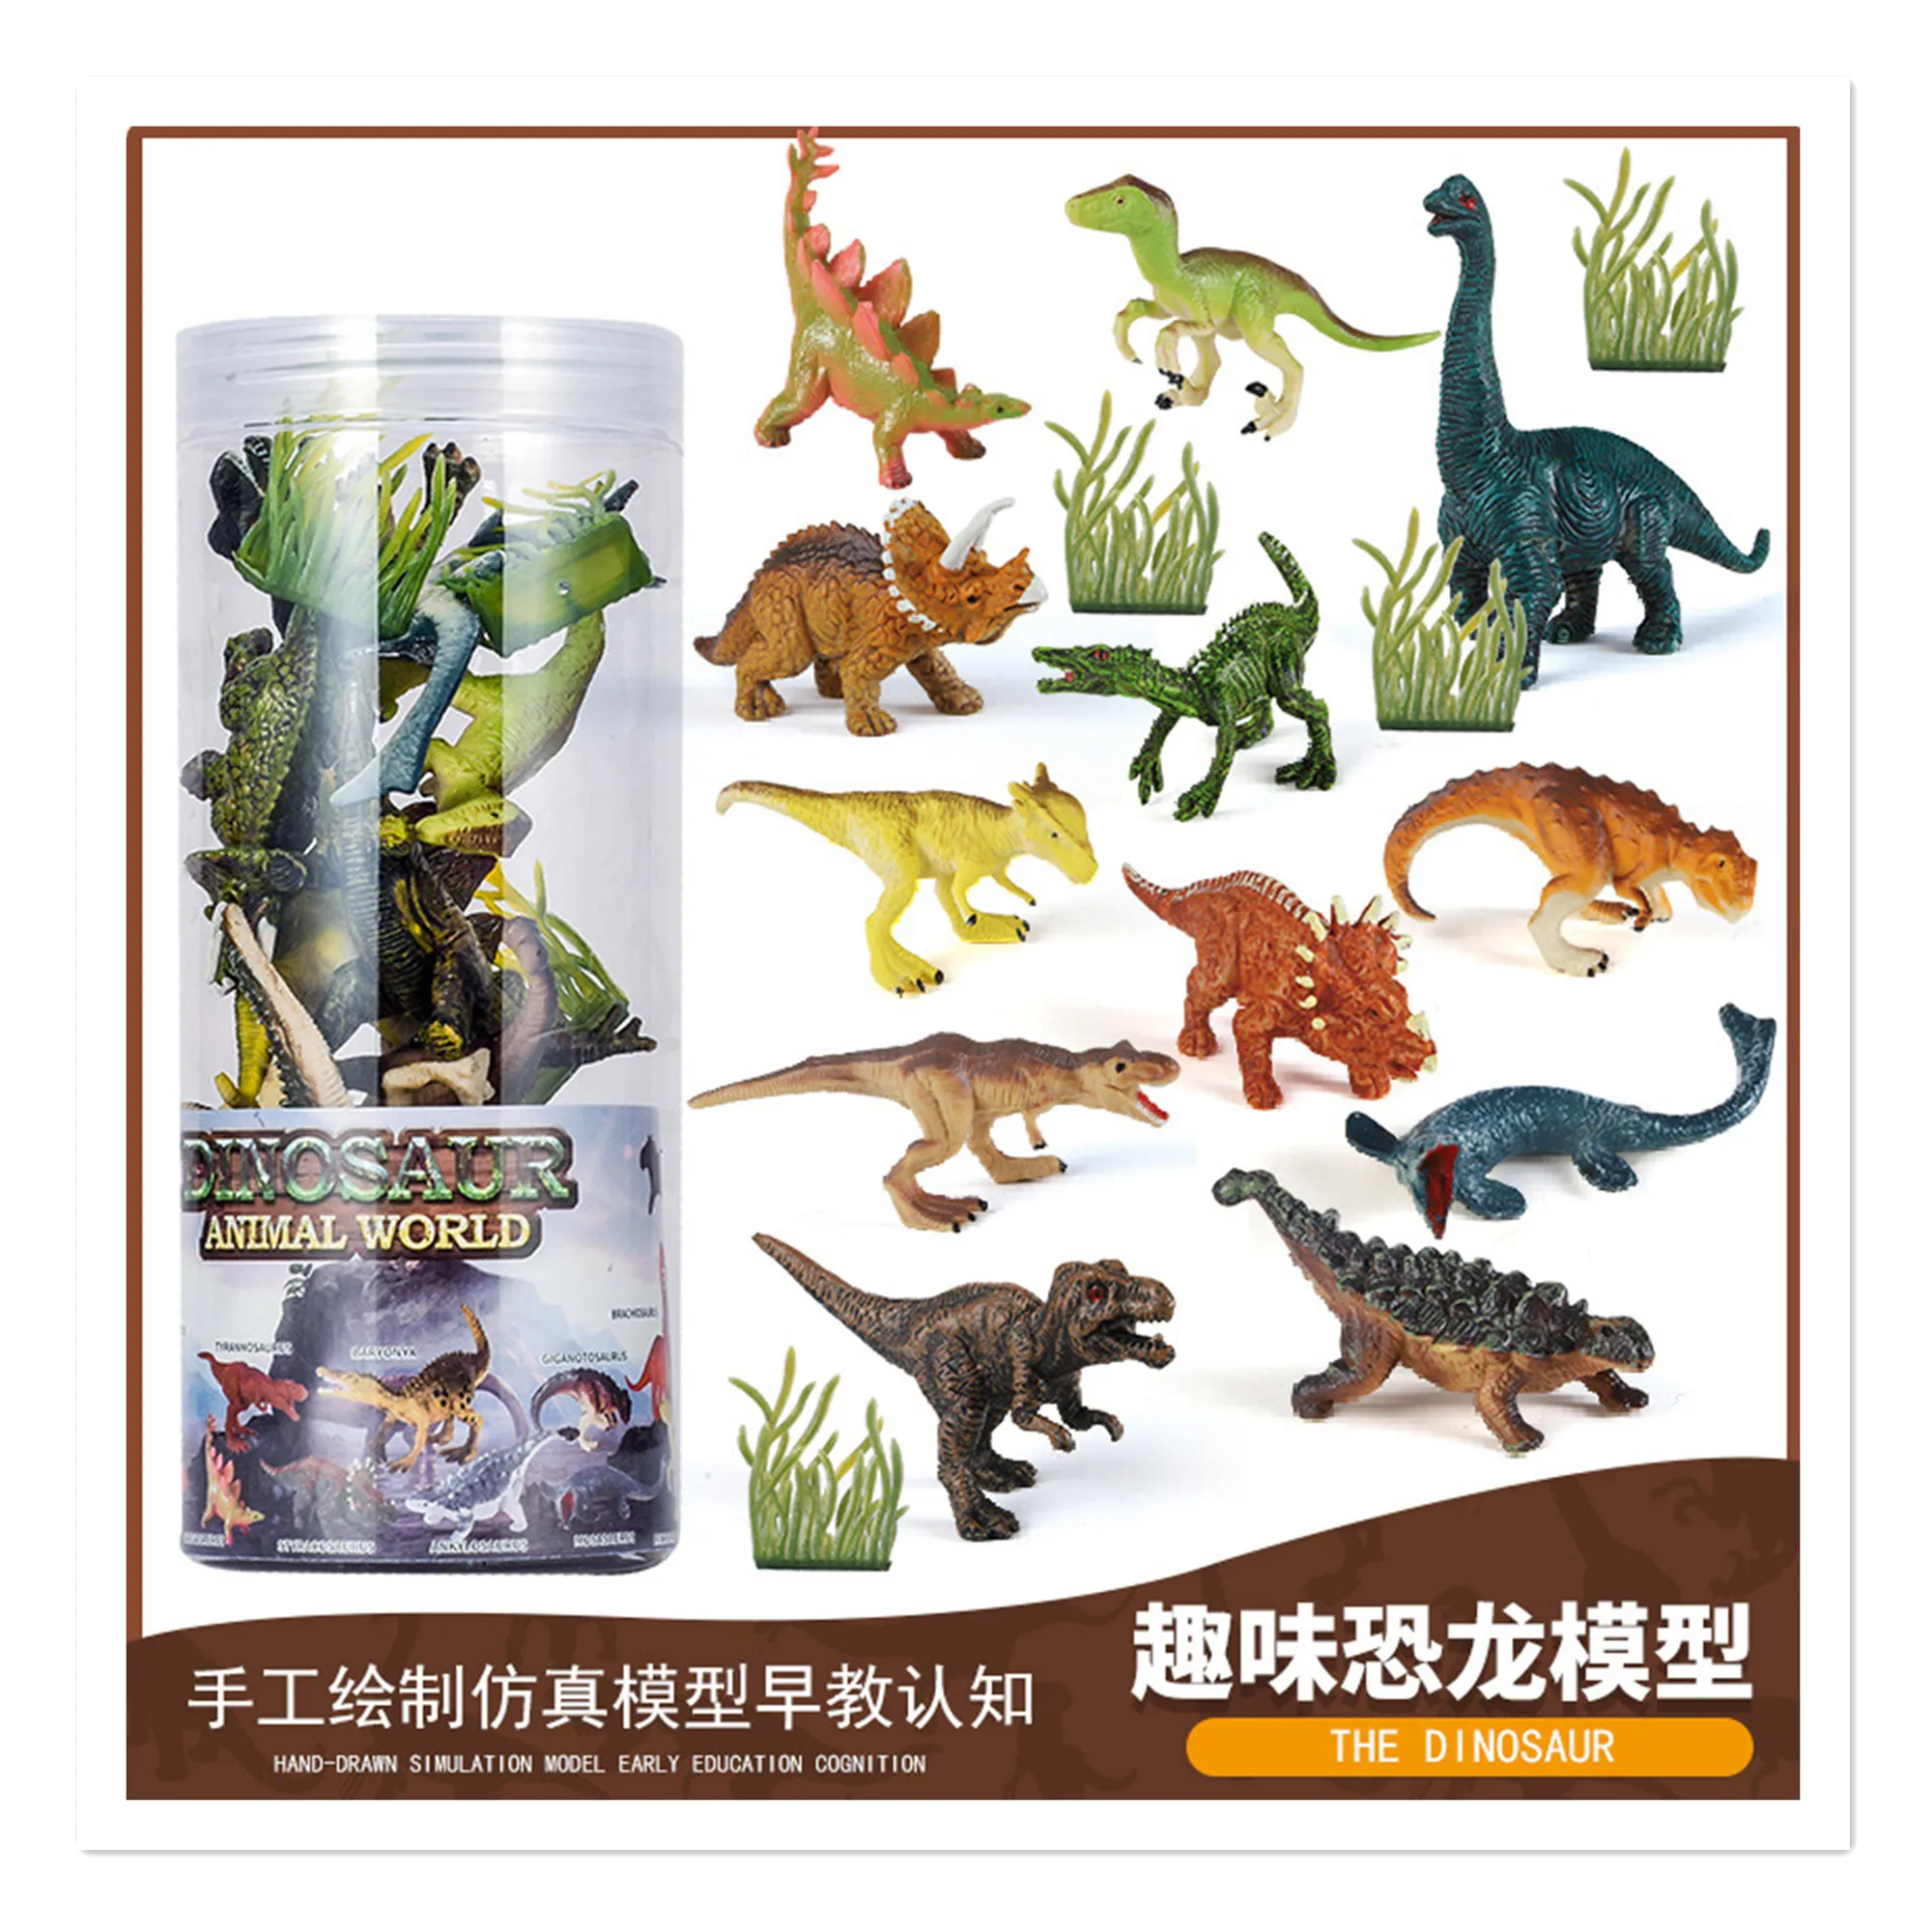 

Модель динозавра Barreled, имитация животного, твердый океан, мини, маленькое животное, динозавр, детская игрушка, оптовая продажа, пересечение границ